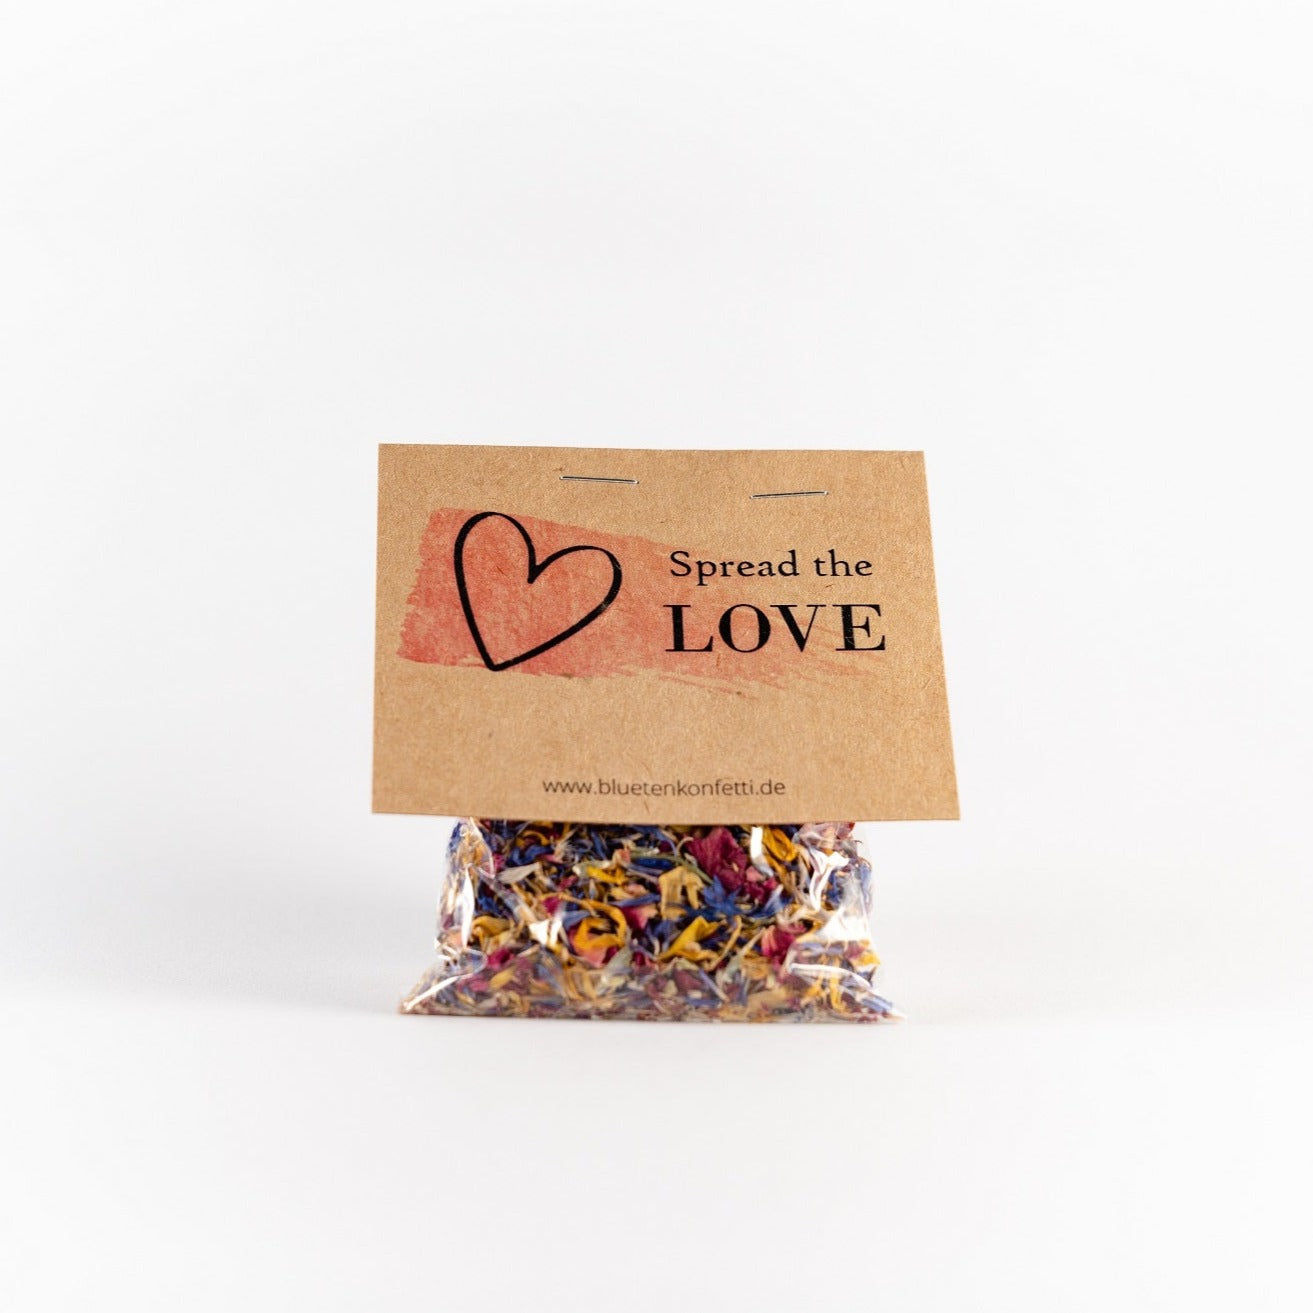 Blütenkonfetti Summer Days in Päckchen mit Aufdruck Spread the Love